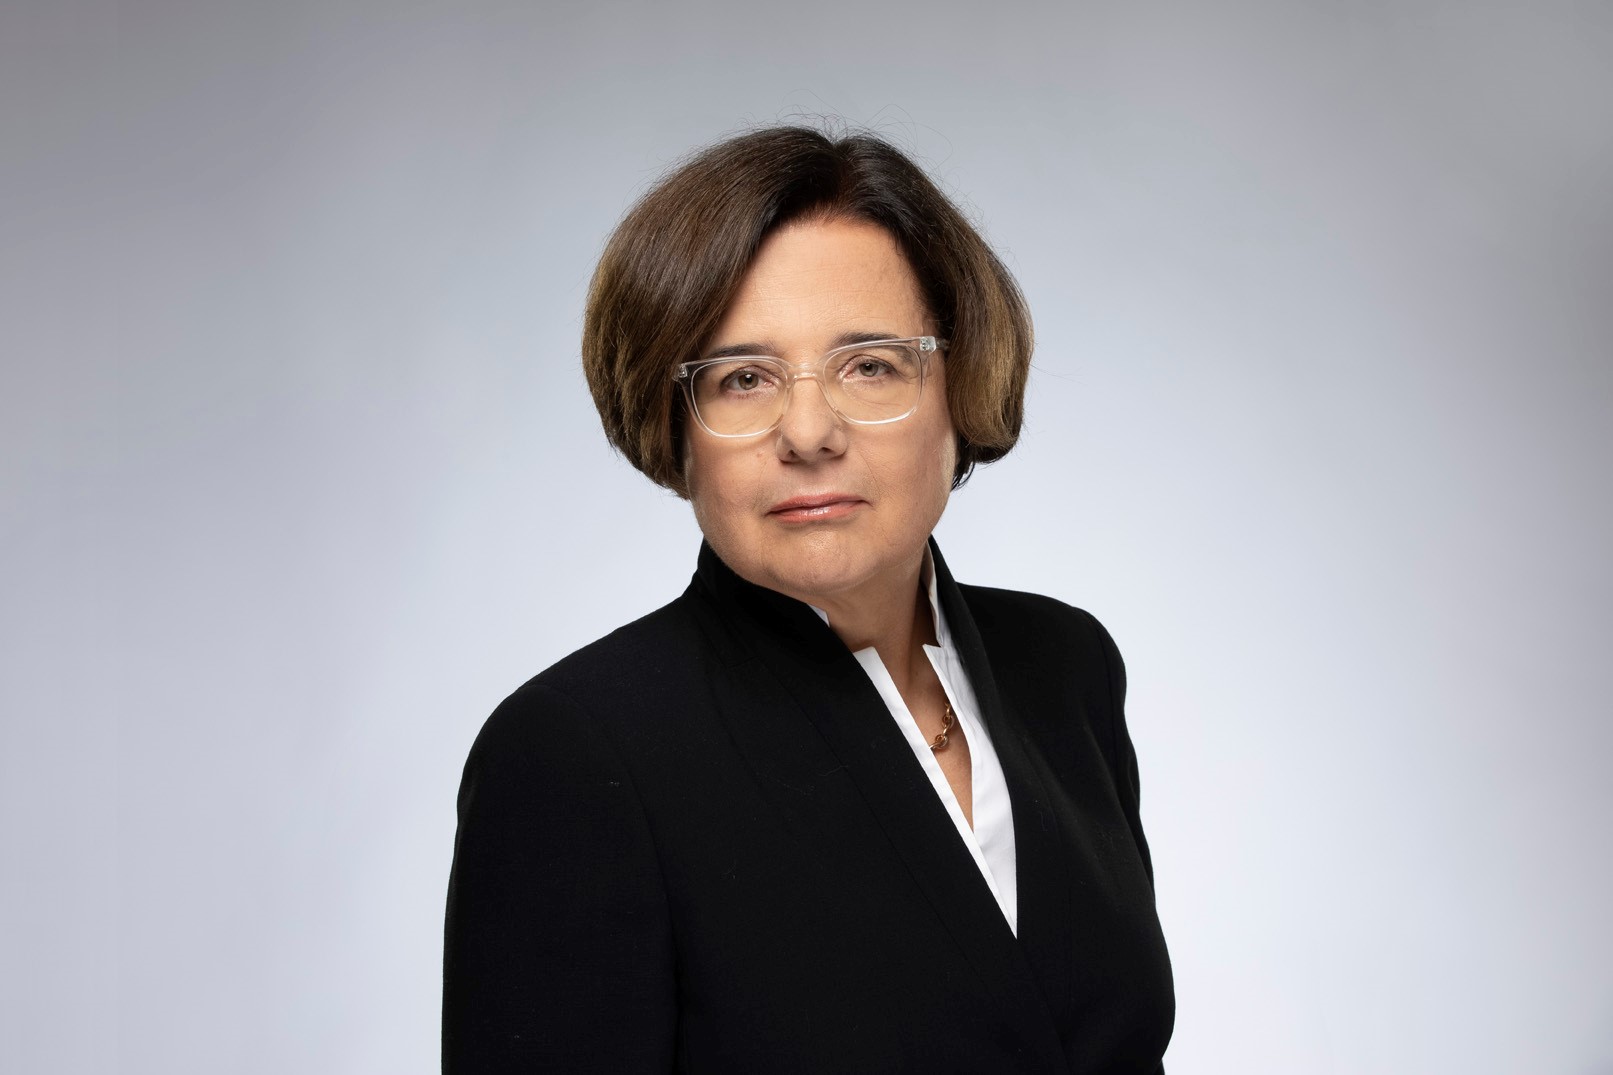 Susanne Haury von Siebenthal, amministratore non esecutivo di Pictet Asset Management Holding SA